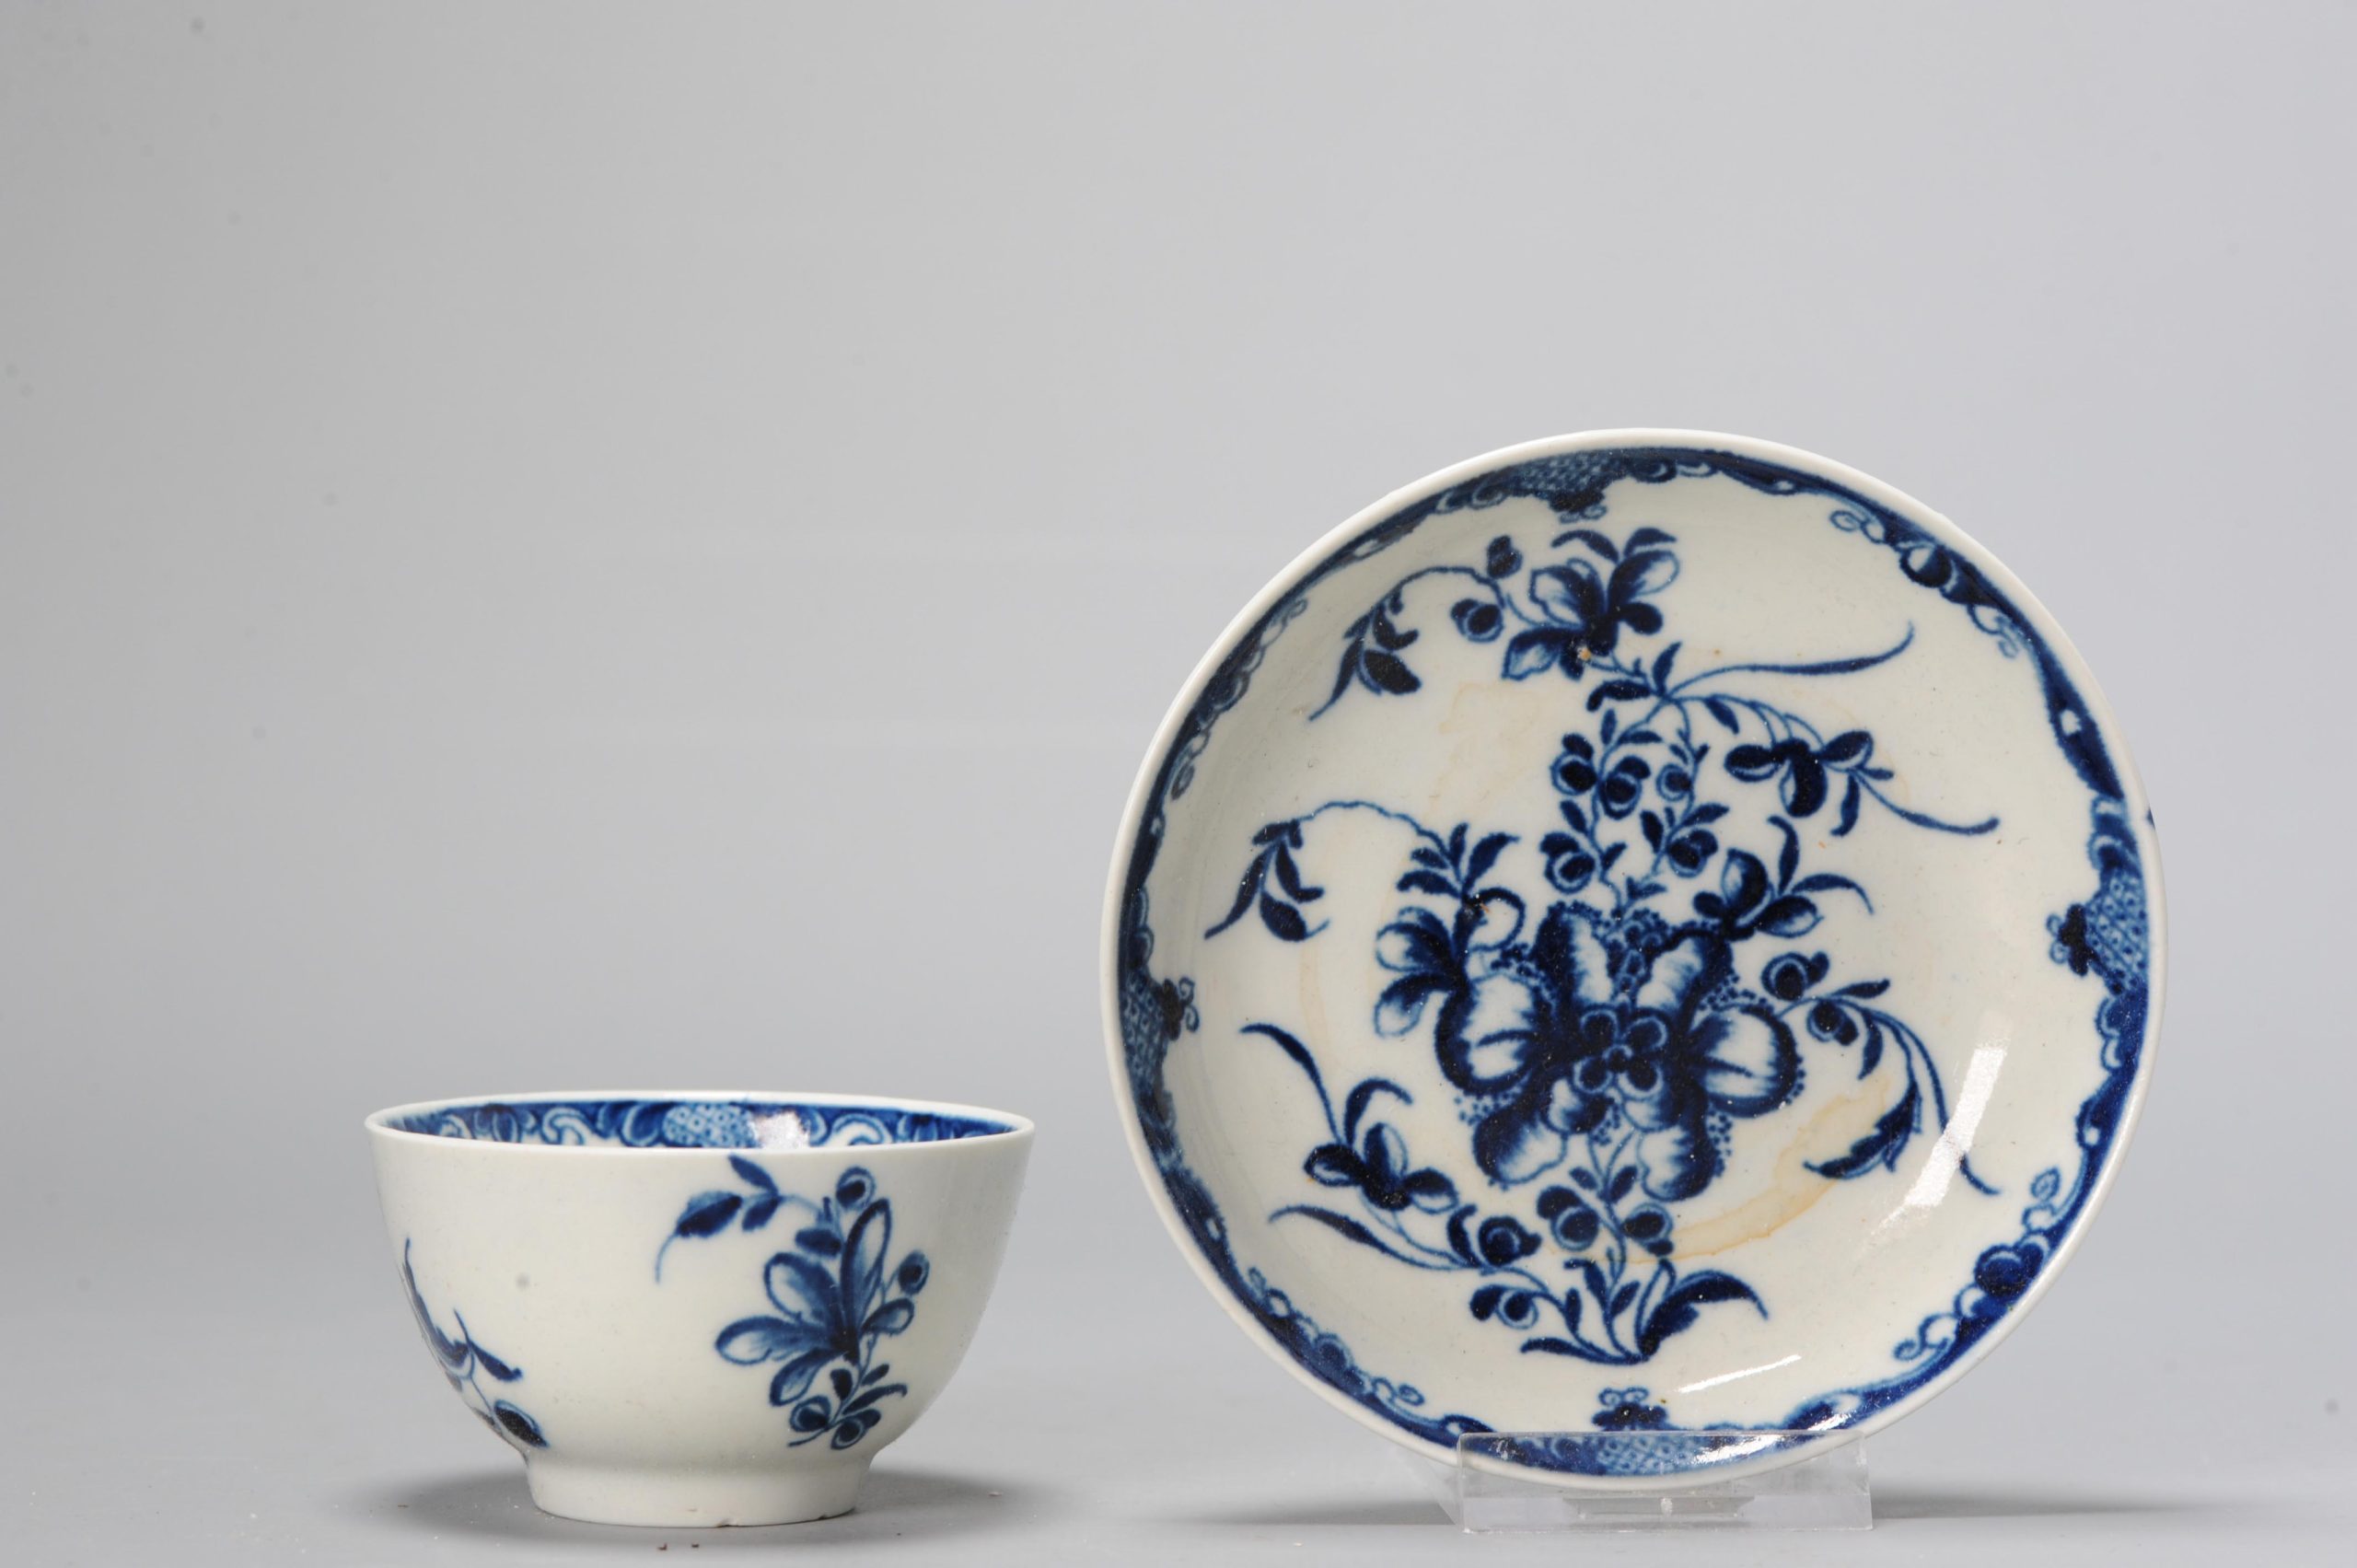 Antique Worchester Porcelain Tea bowl 18th c Flower Pattern English